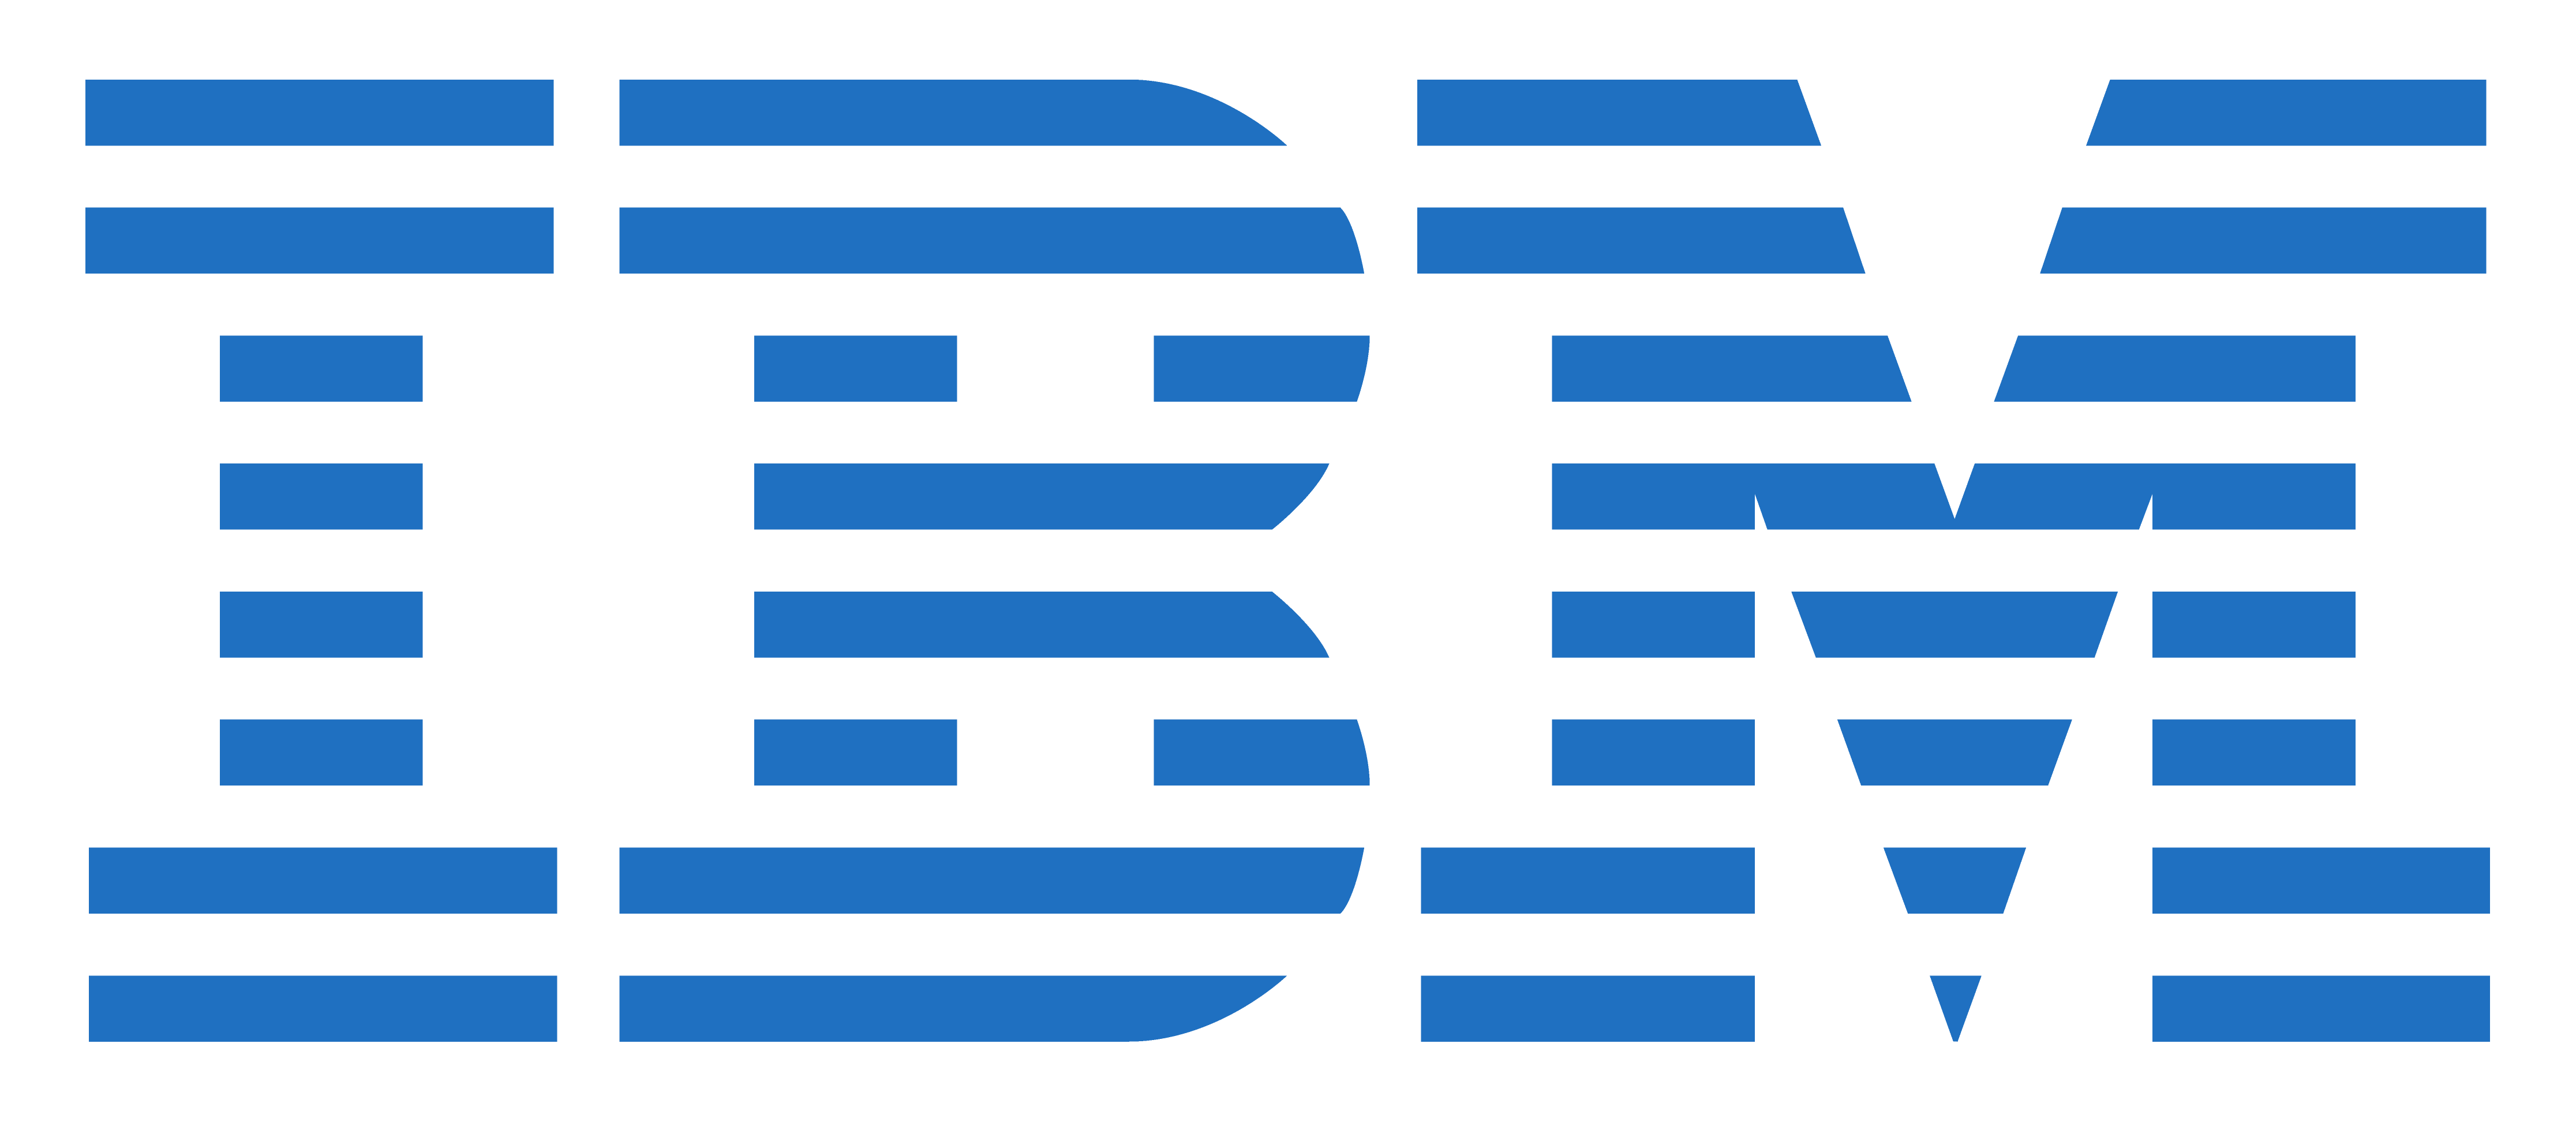 Official IBM Logo - IBM logos PNG image free download, IBM logo PNG